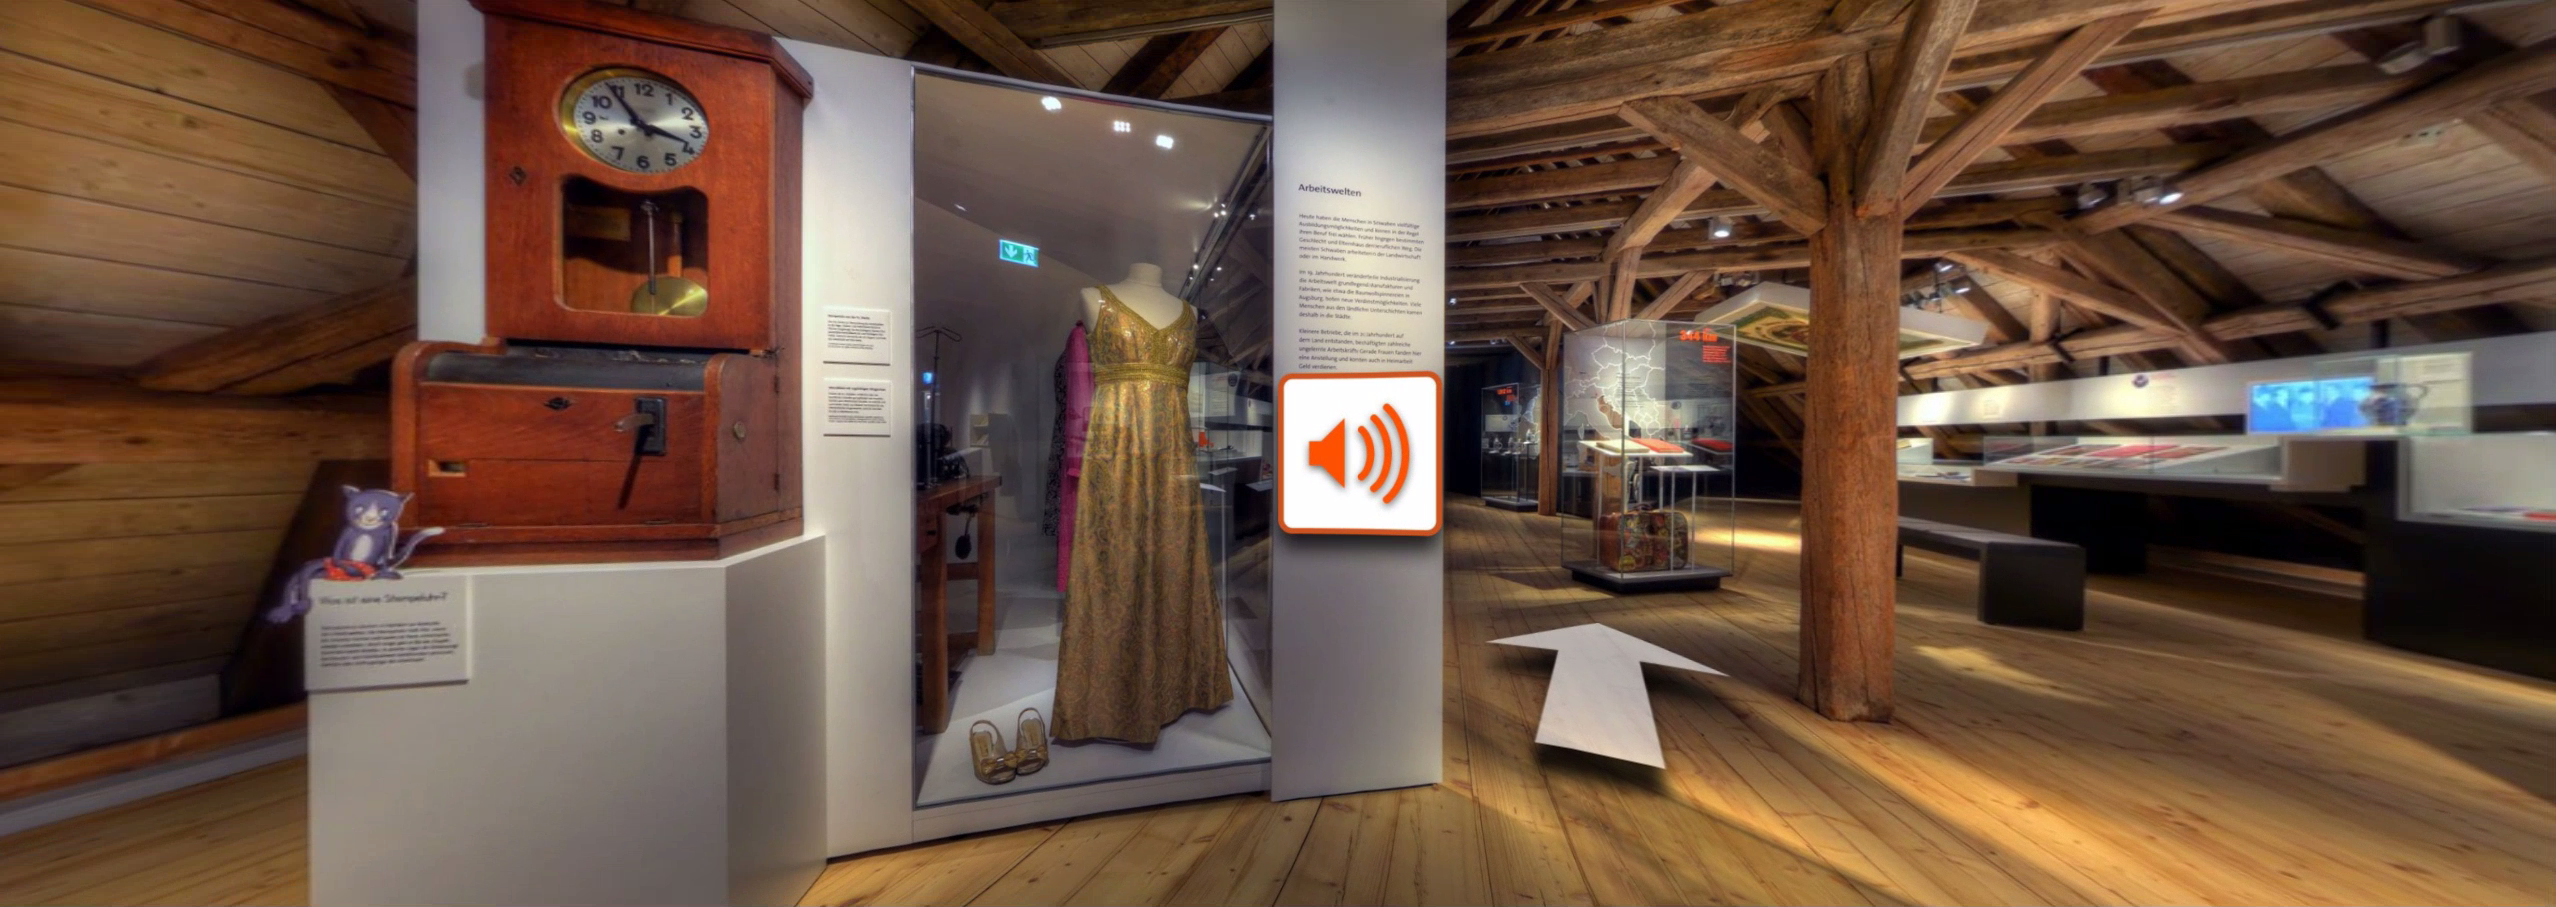 Bildschirmfoto aus dem virtuellen Rundgang: Panoramafoto in einem Ausstellungsraum mit Pfeil-Symbol für die Navigation und einem Lautsprecher-Symbol für einblendbare Erklärungen